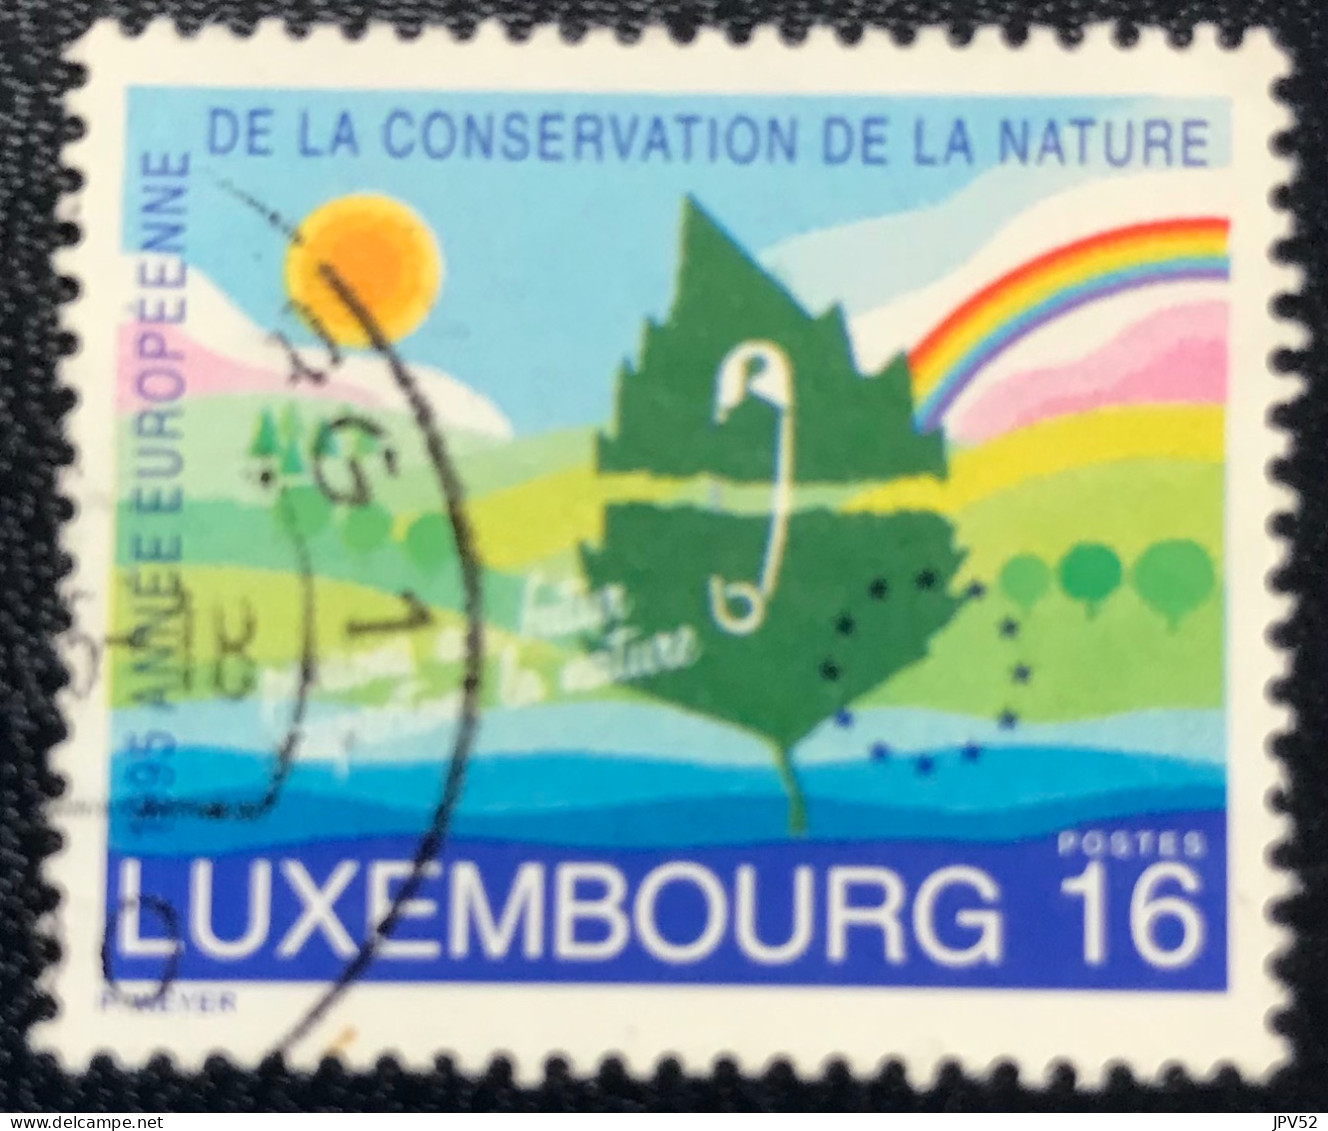 Luxembourg - Luxemburg - C18/30 - 1995 - (°)used - Michel 1373 - Natuurbescherming - Gebruikt